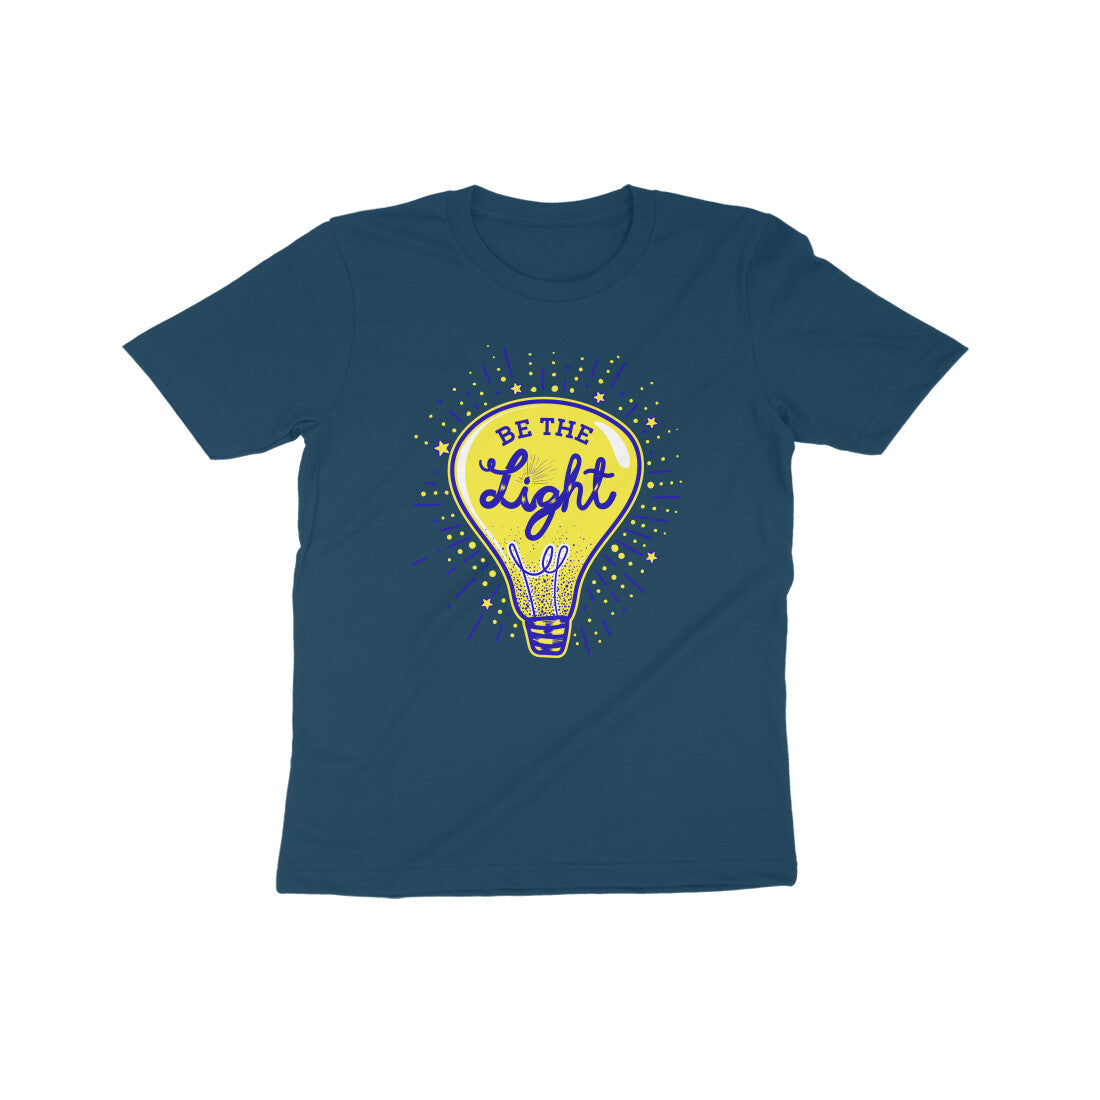 Be the light Kids T-Shirt